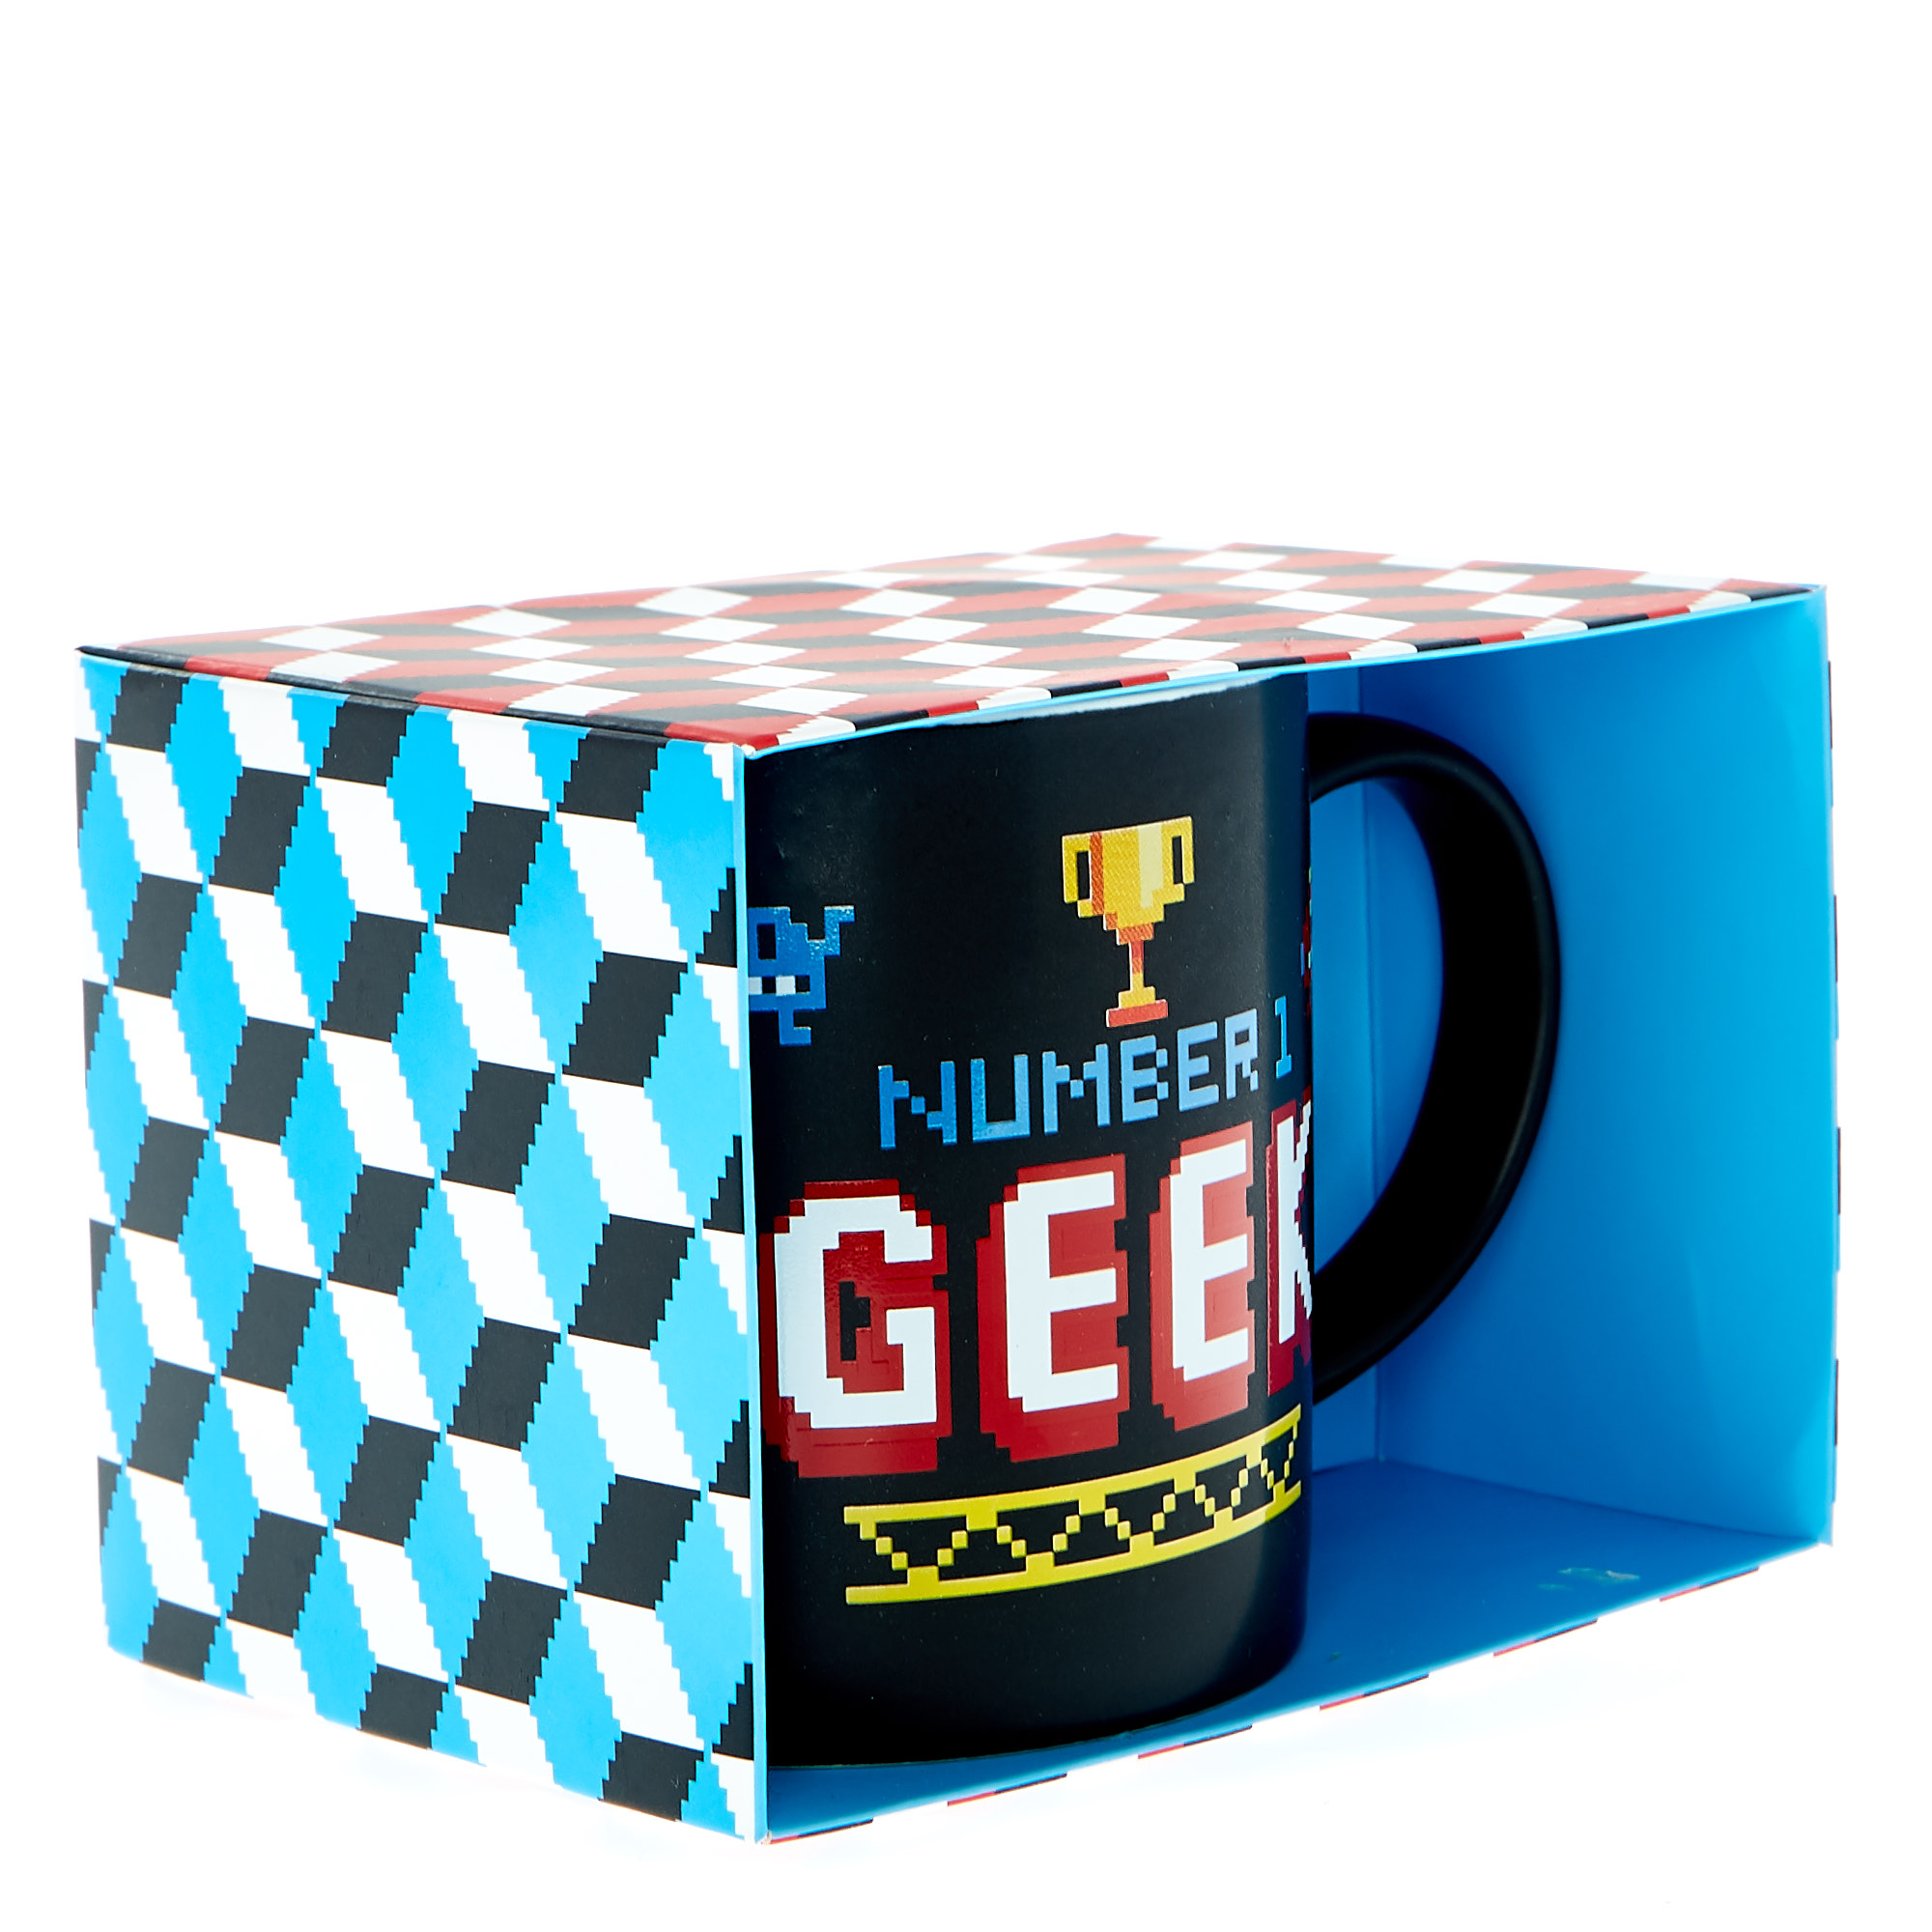 Number 1 Geek Mug 